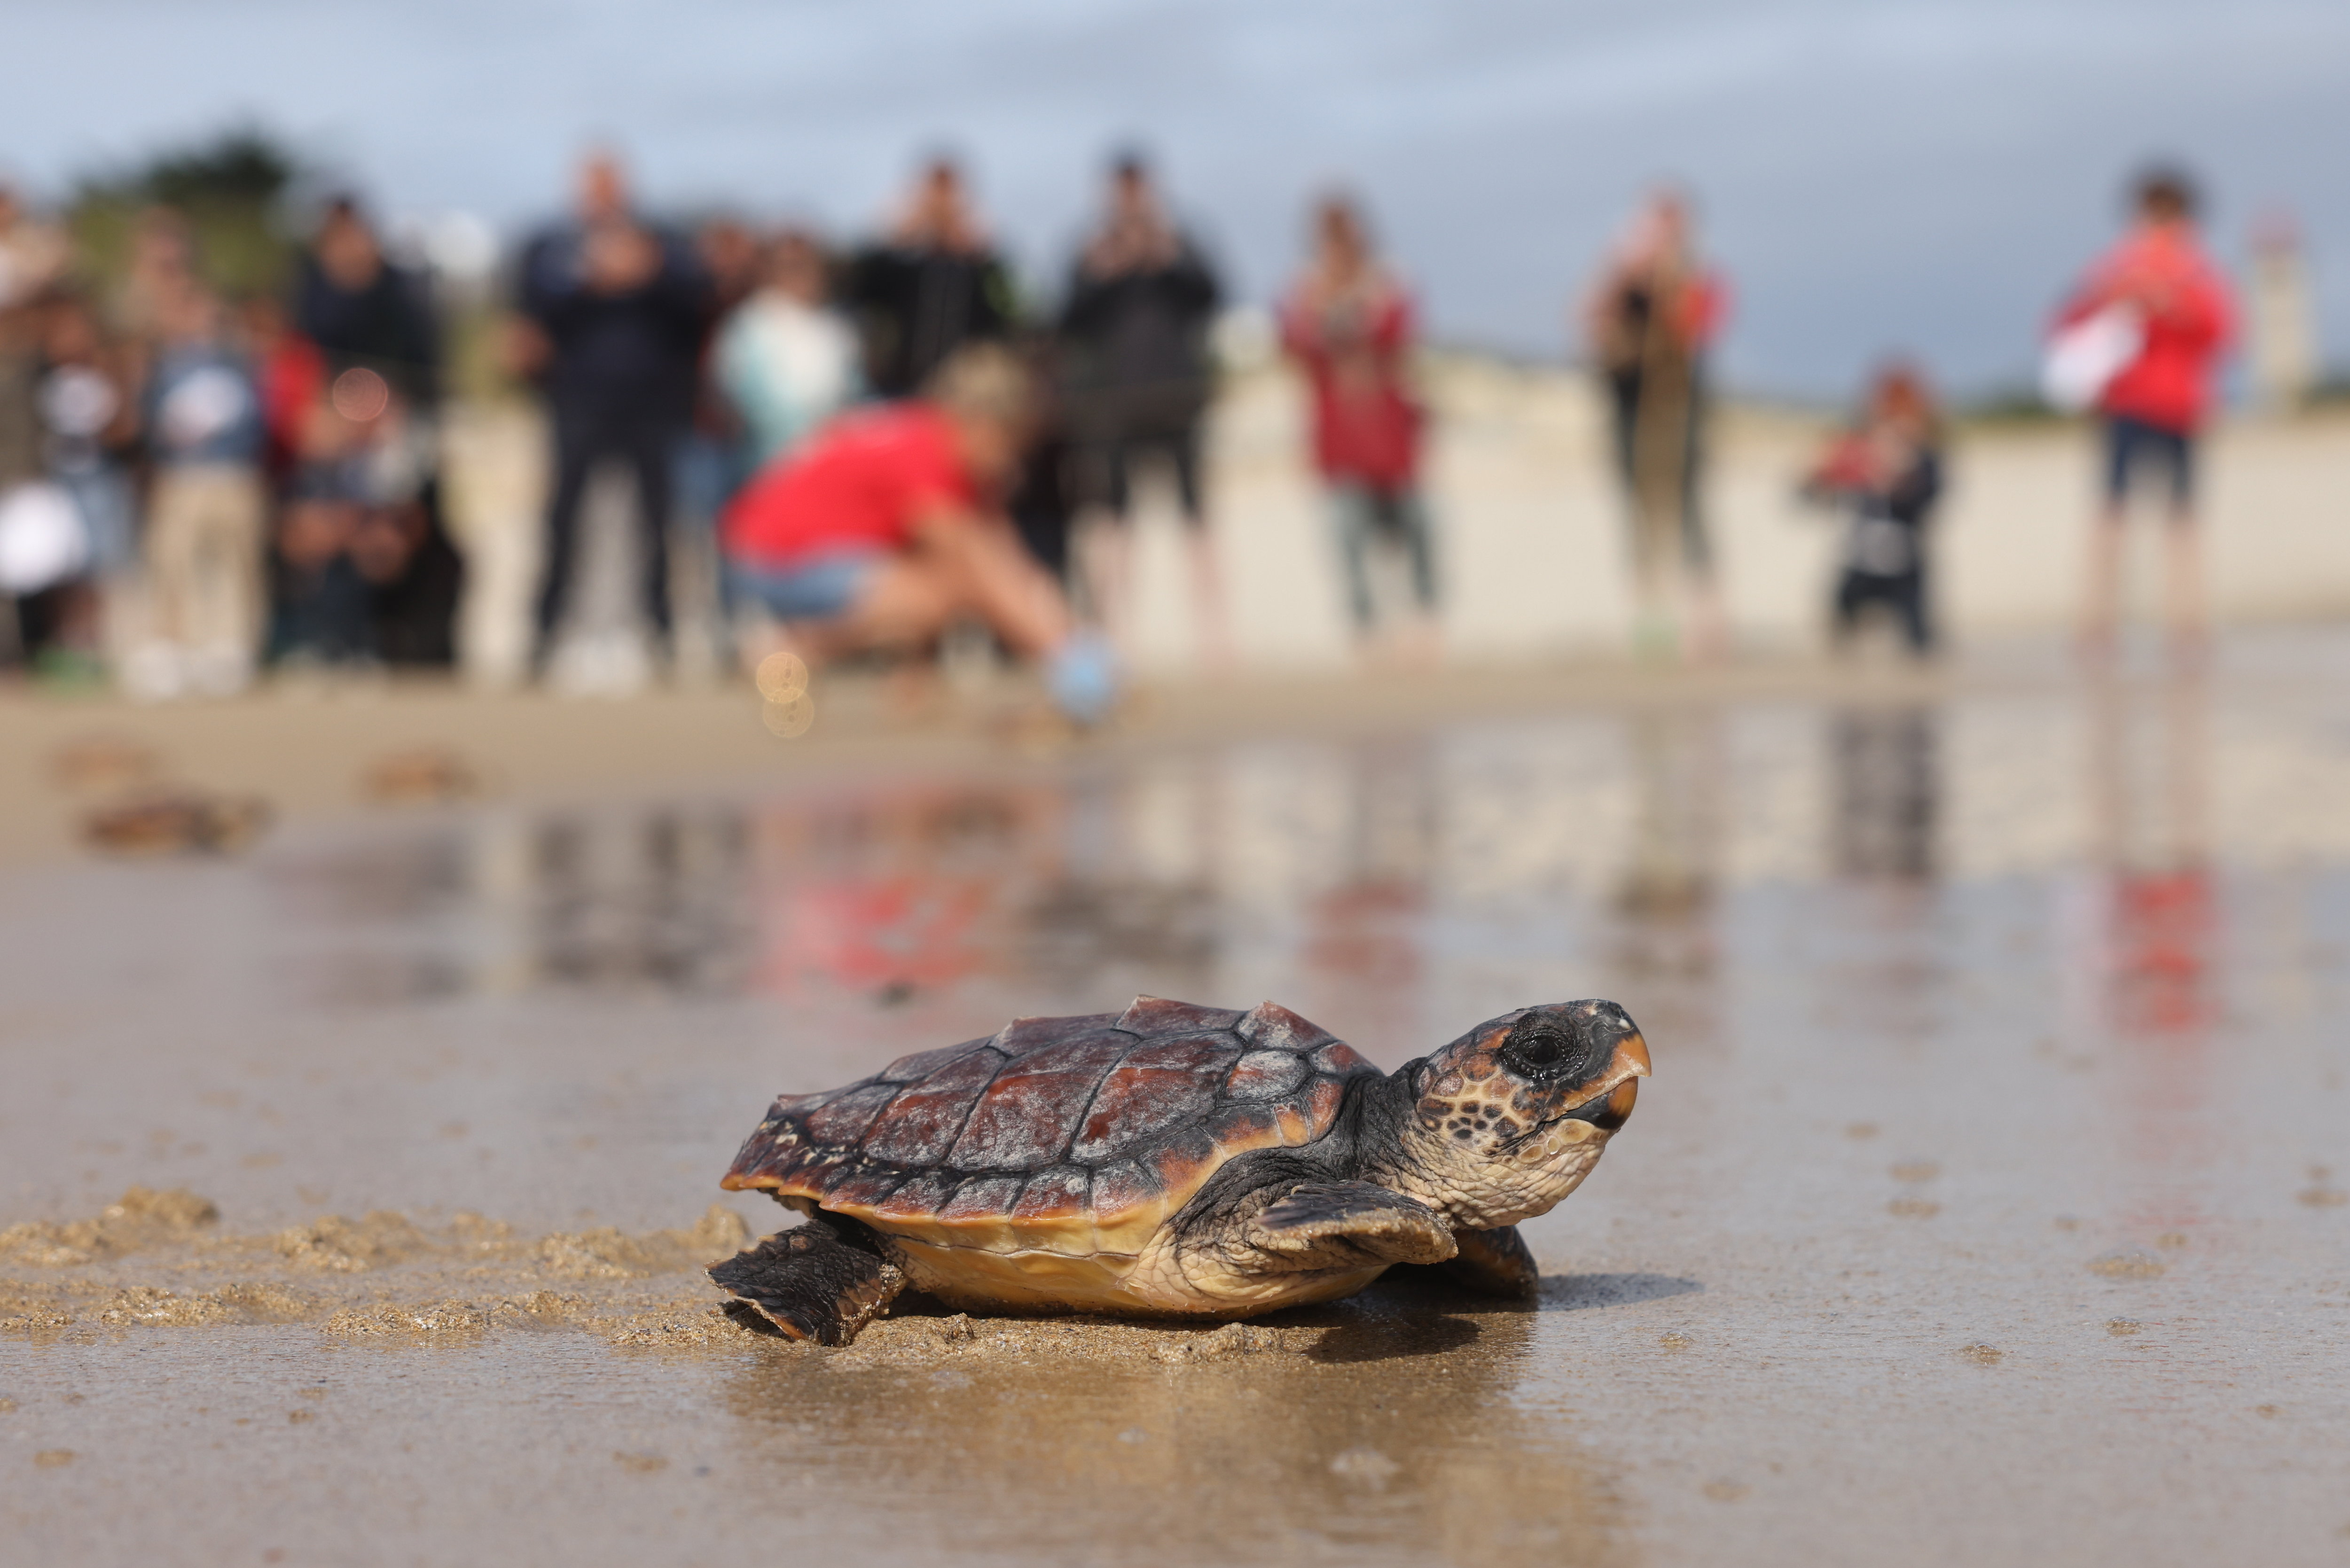 Ce lundi, 65 tortues ont été remises à la mer sur la plage de la Conche des baleines, au nord-ouest de l’île de Ré (Charente-Maritime). LP/Arnaud Journois